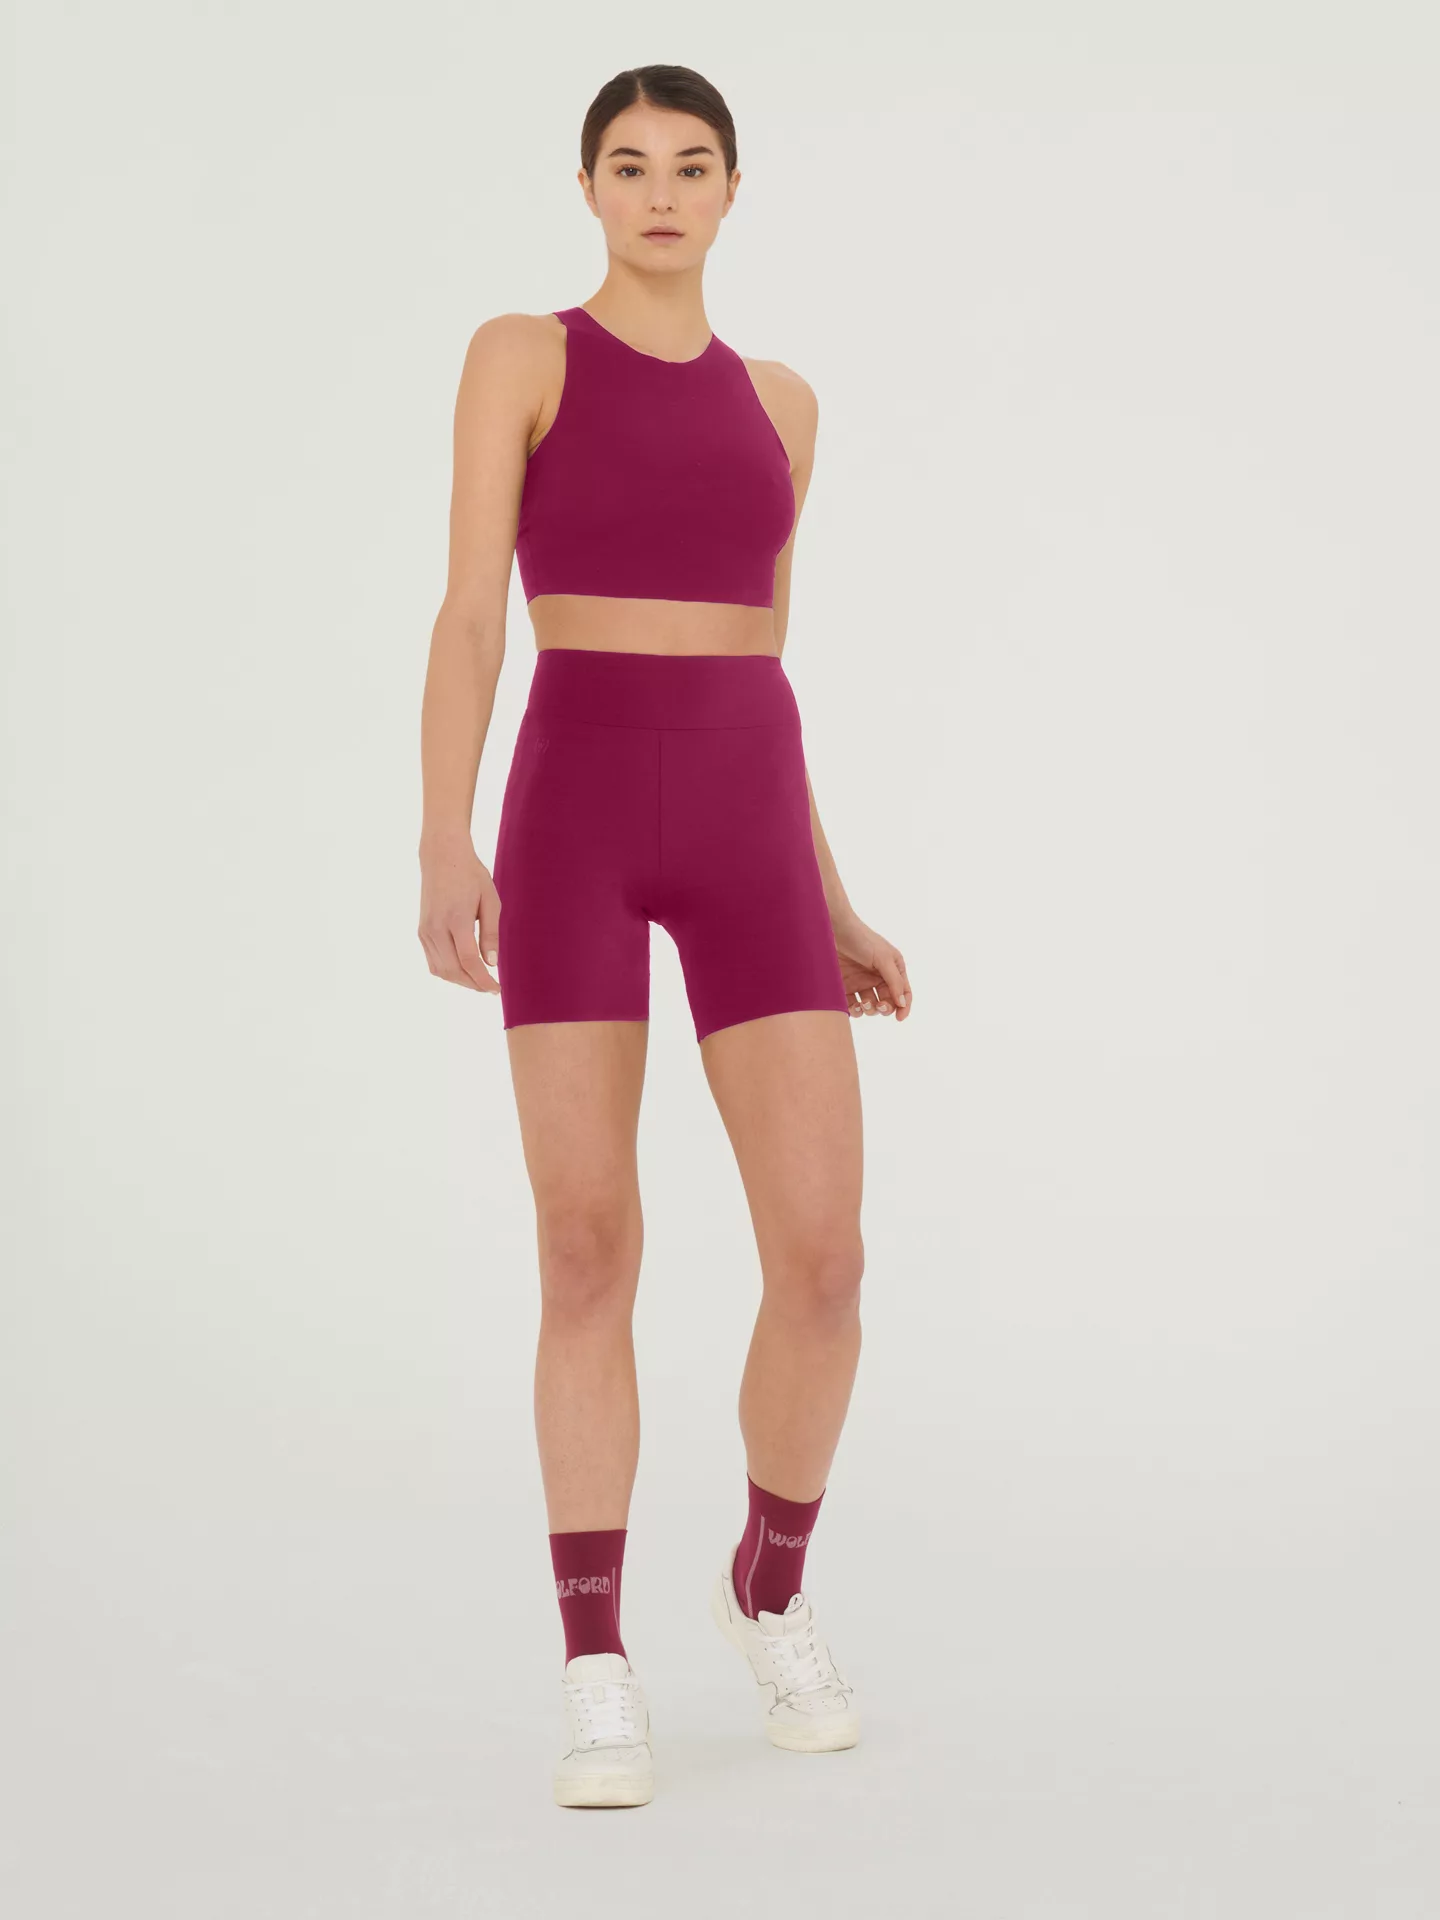 Wolford - The Workout Shorts, Frau, mineral red, Größe: M günstig online kaufen